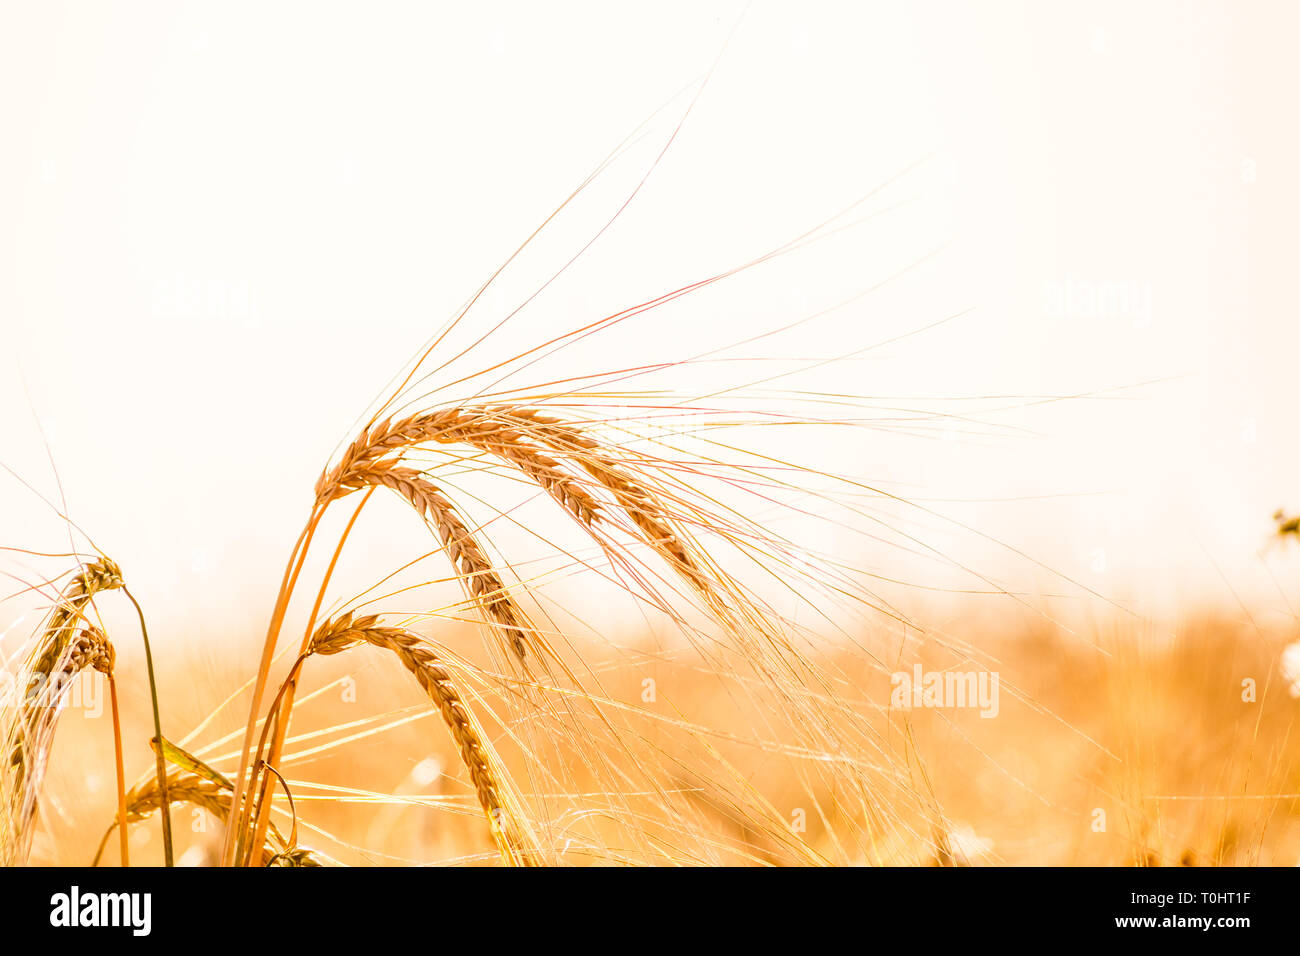 Wheat field. Background of ripening ears of meadow wheat field. Stock Photo